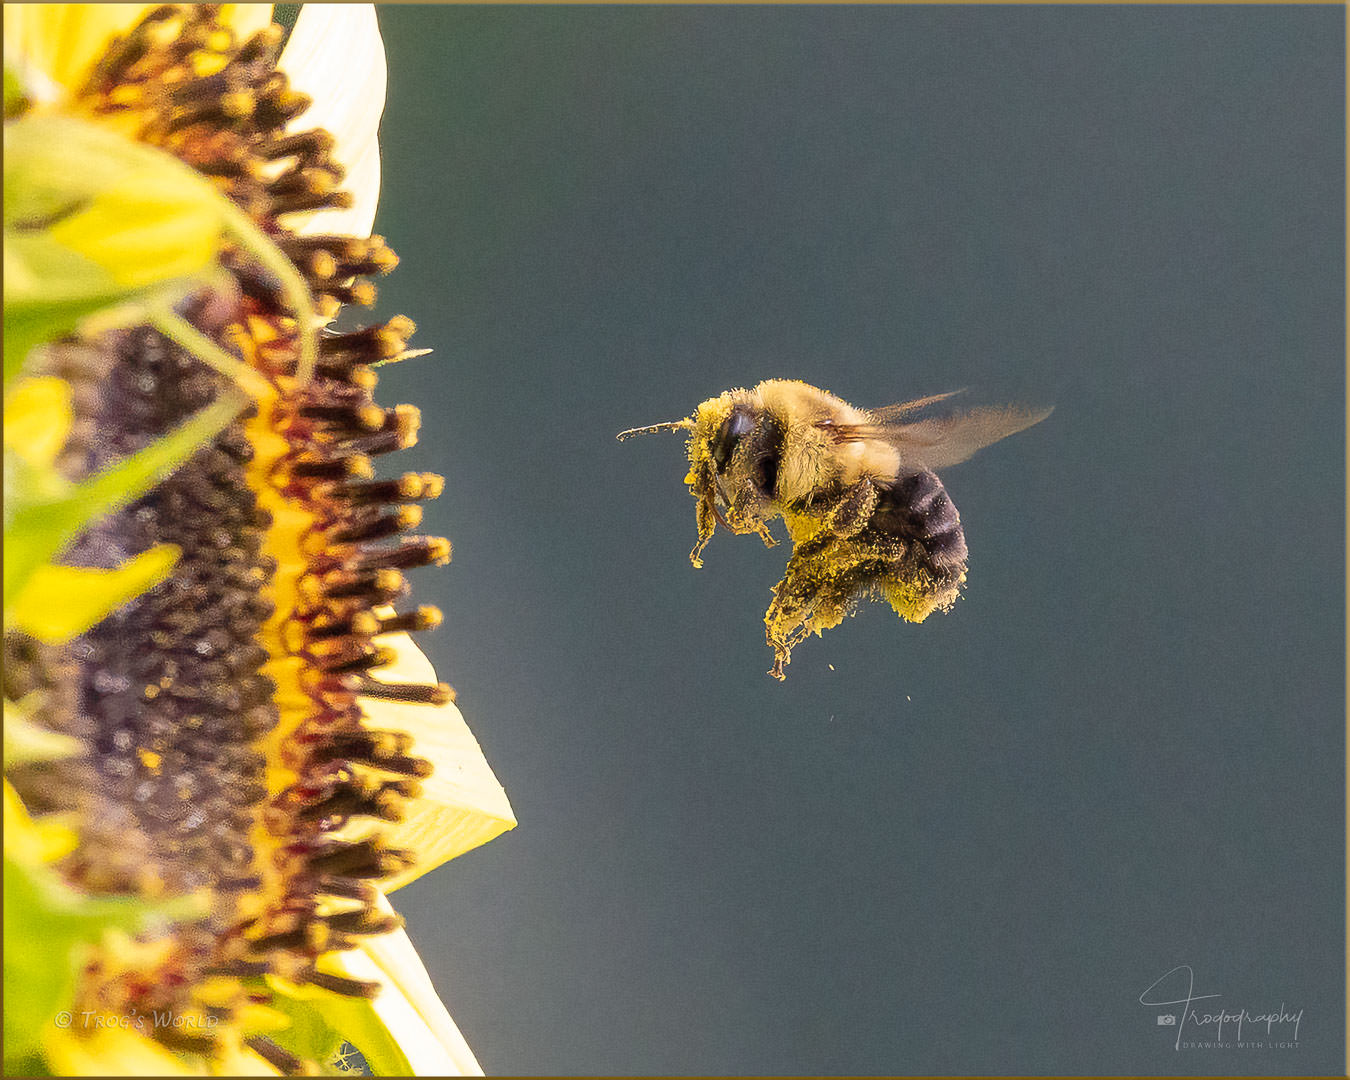 Bumblebee in flight with pollen